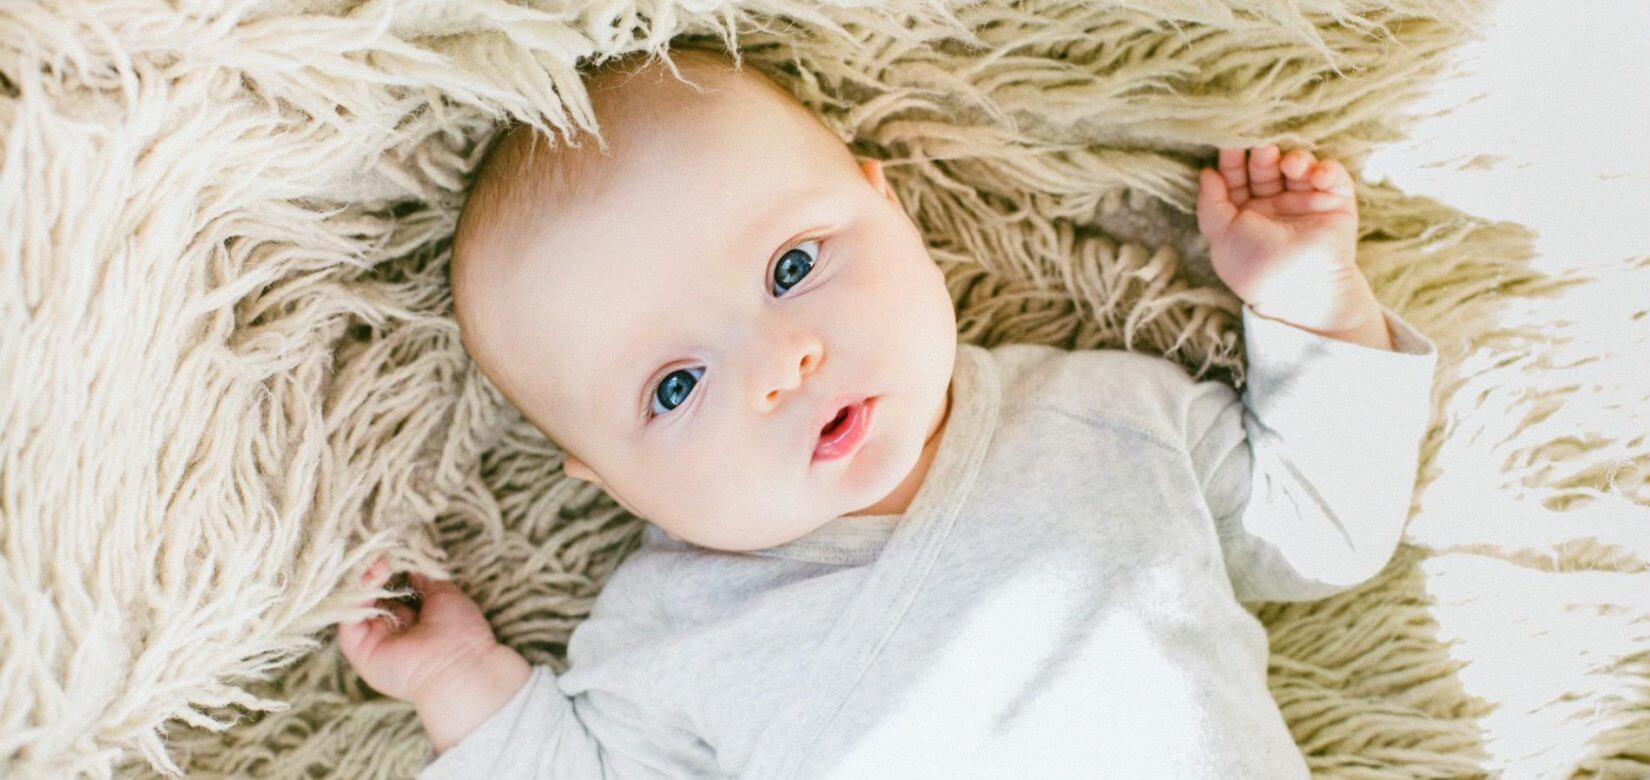 Απίστευτο: Ένα μωράκι μόλις 8 εβδομάδων λέει "σ' αγαπώ"! (video)